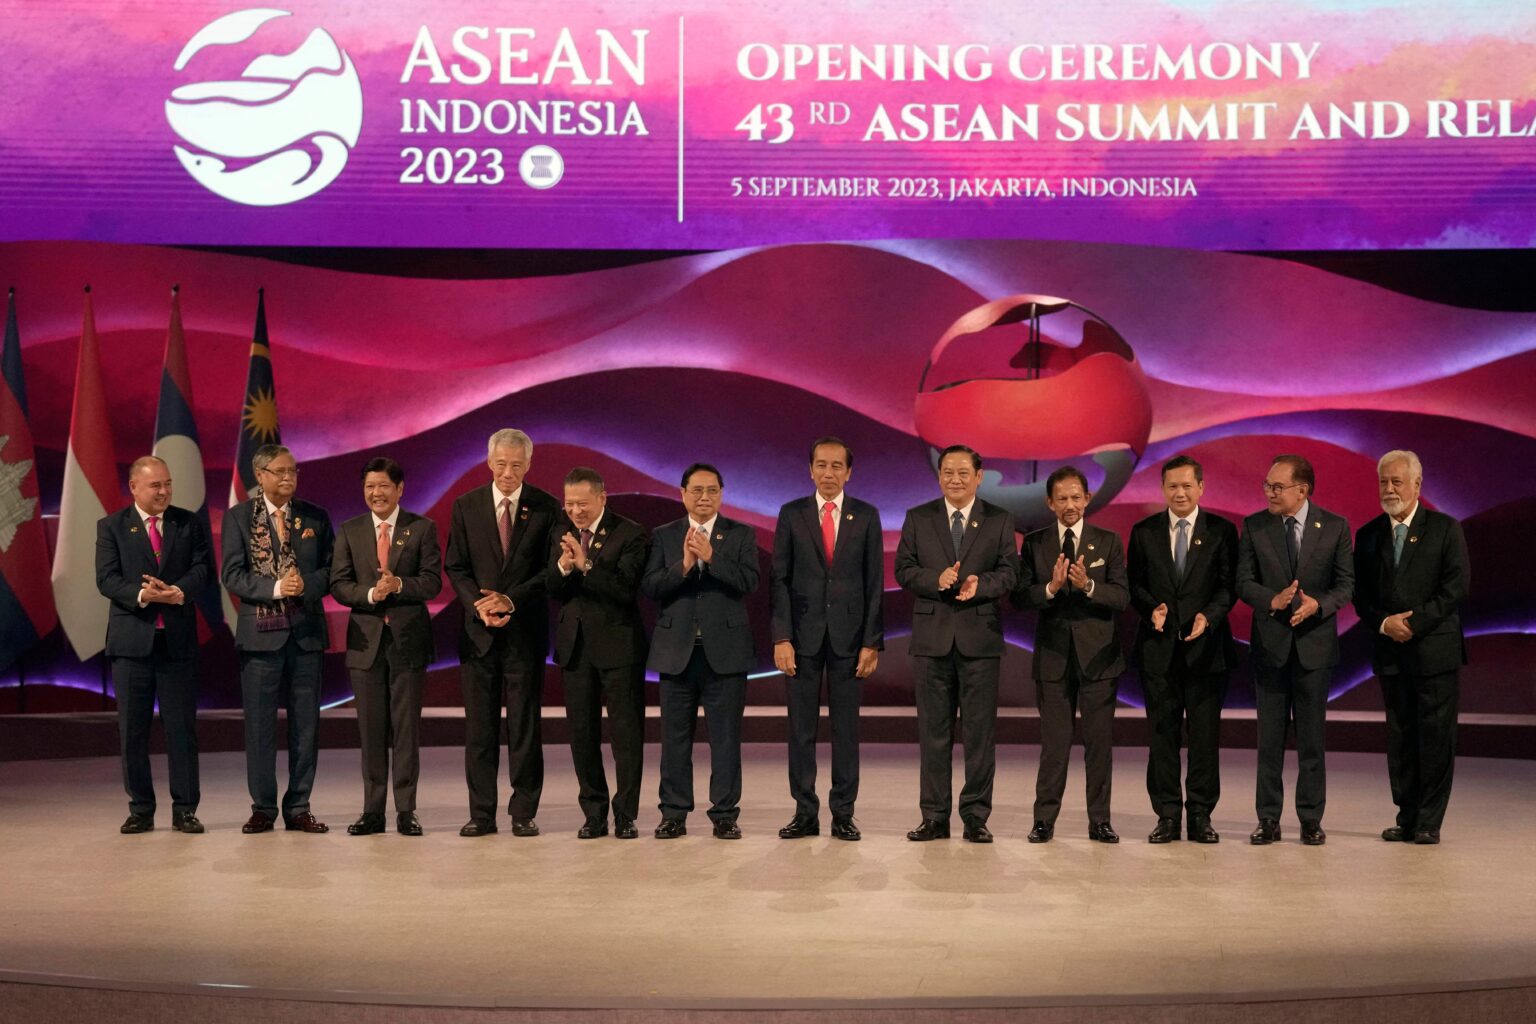 Lãnh đạo các quốc gia ASEAN tham dự lễ khai mạc hội nghị thượng đỉnh ASEAN ở Jakarta, Indonesia, hôm 5 Tháng Chín. Ảnh: Dita Alangkhara/PooL/AFP via Getty Images